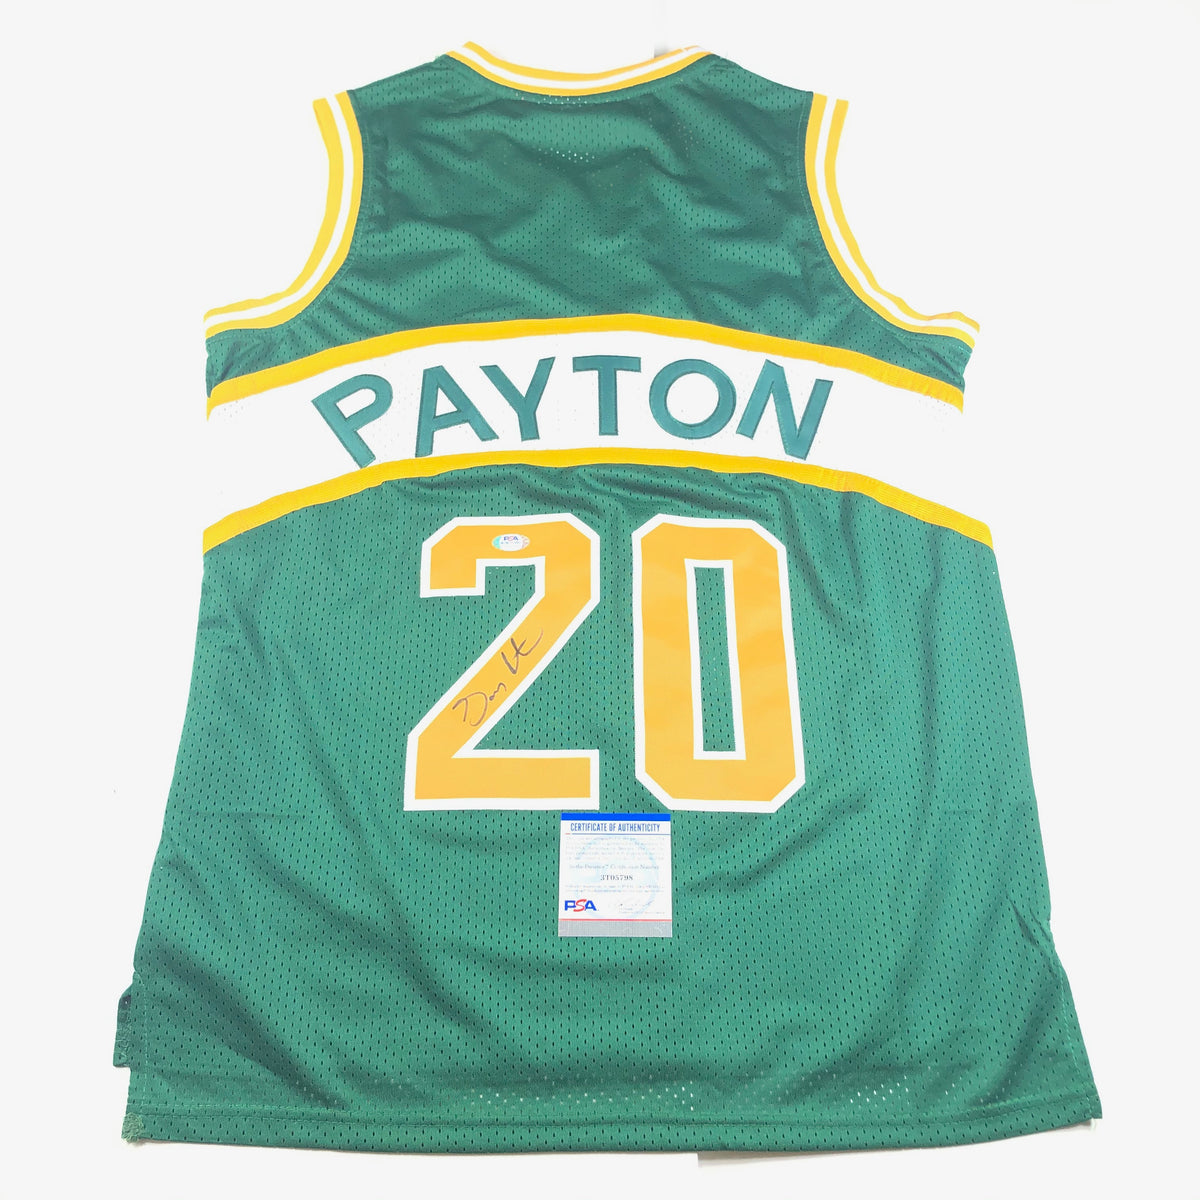 Autographed/Signed Gary Payton Seattle Green Basketball Jersey JSA